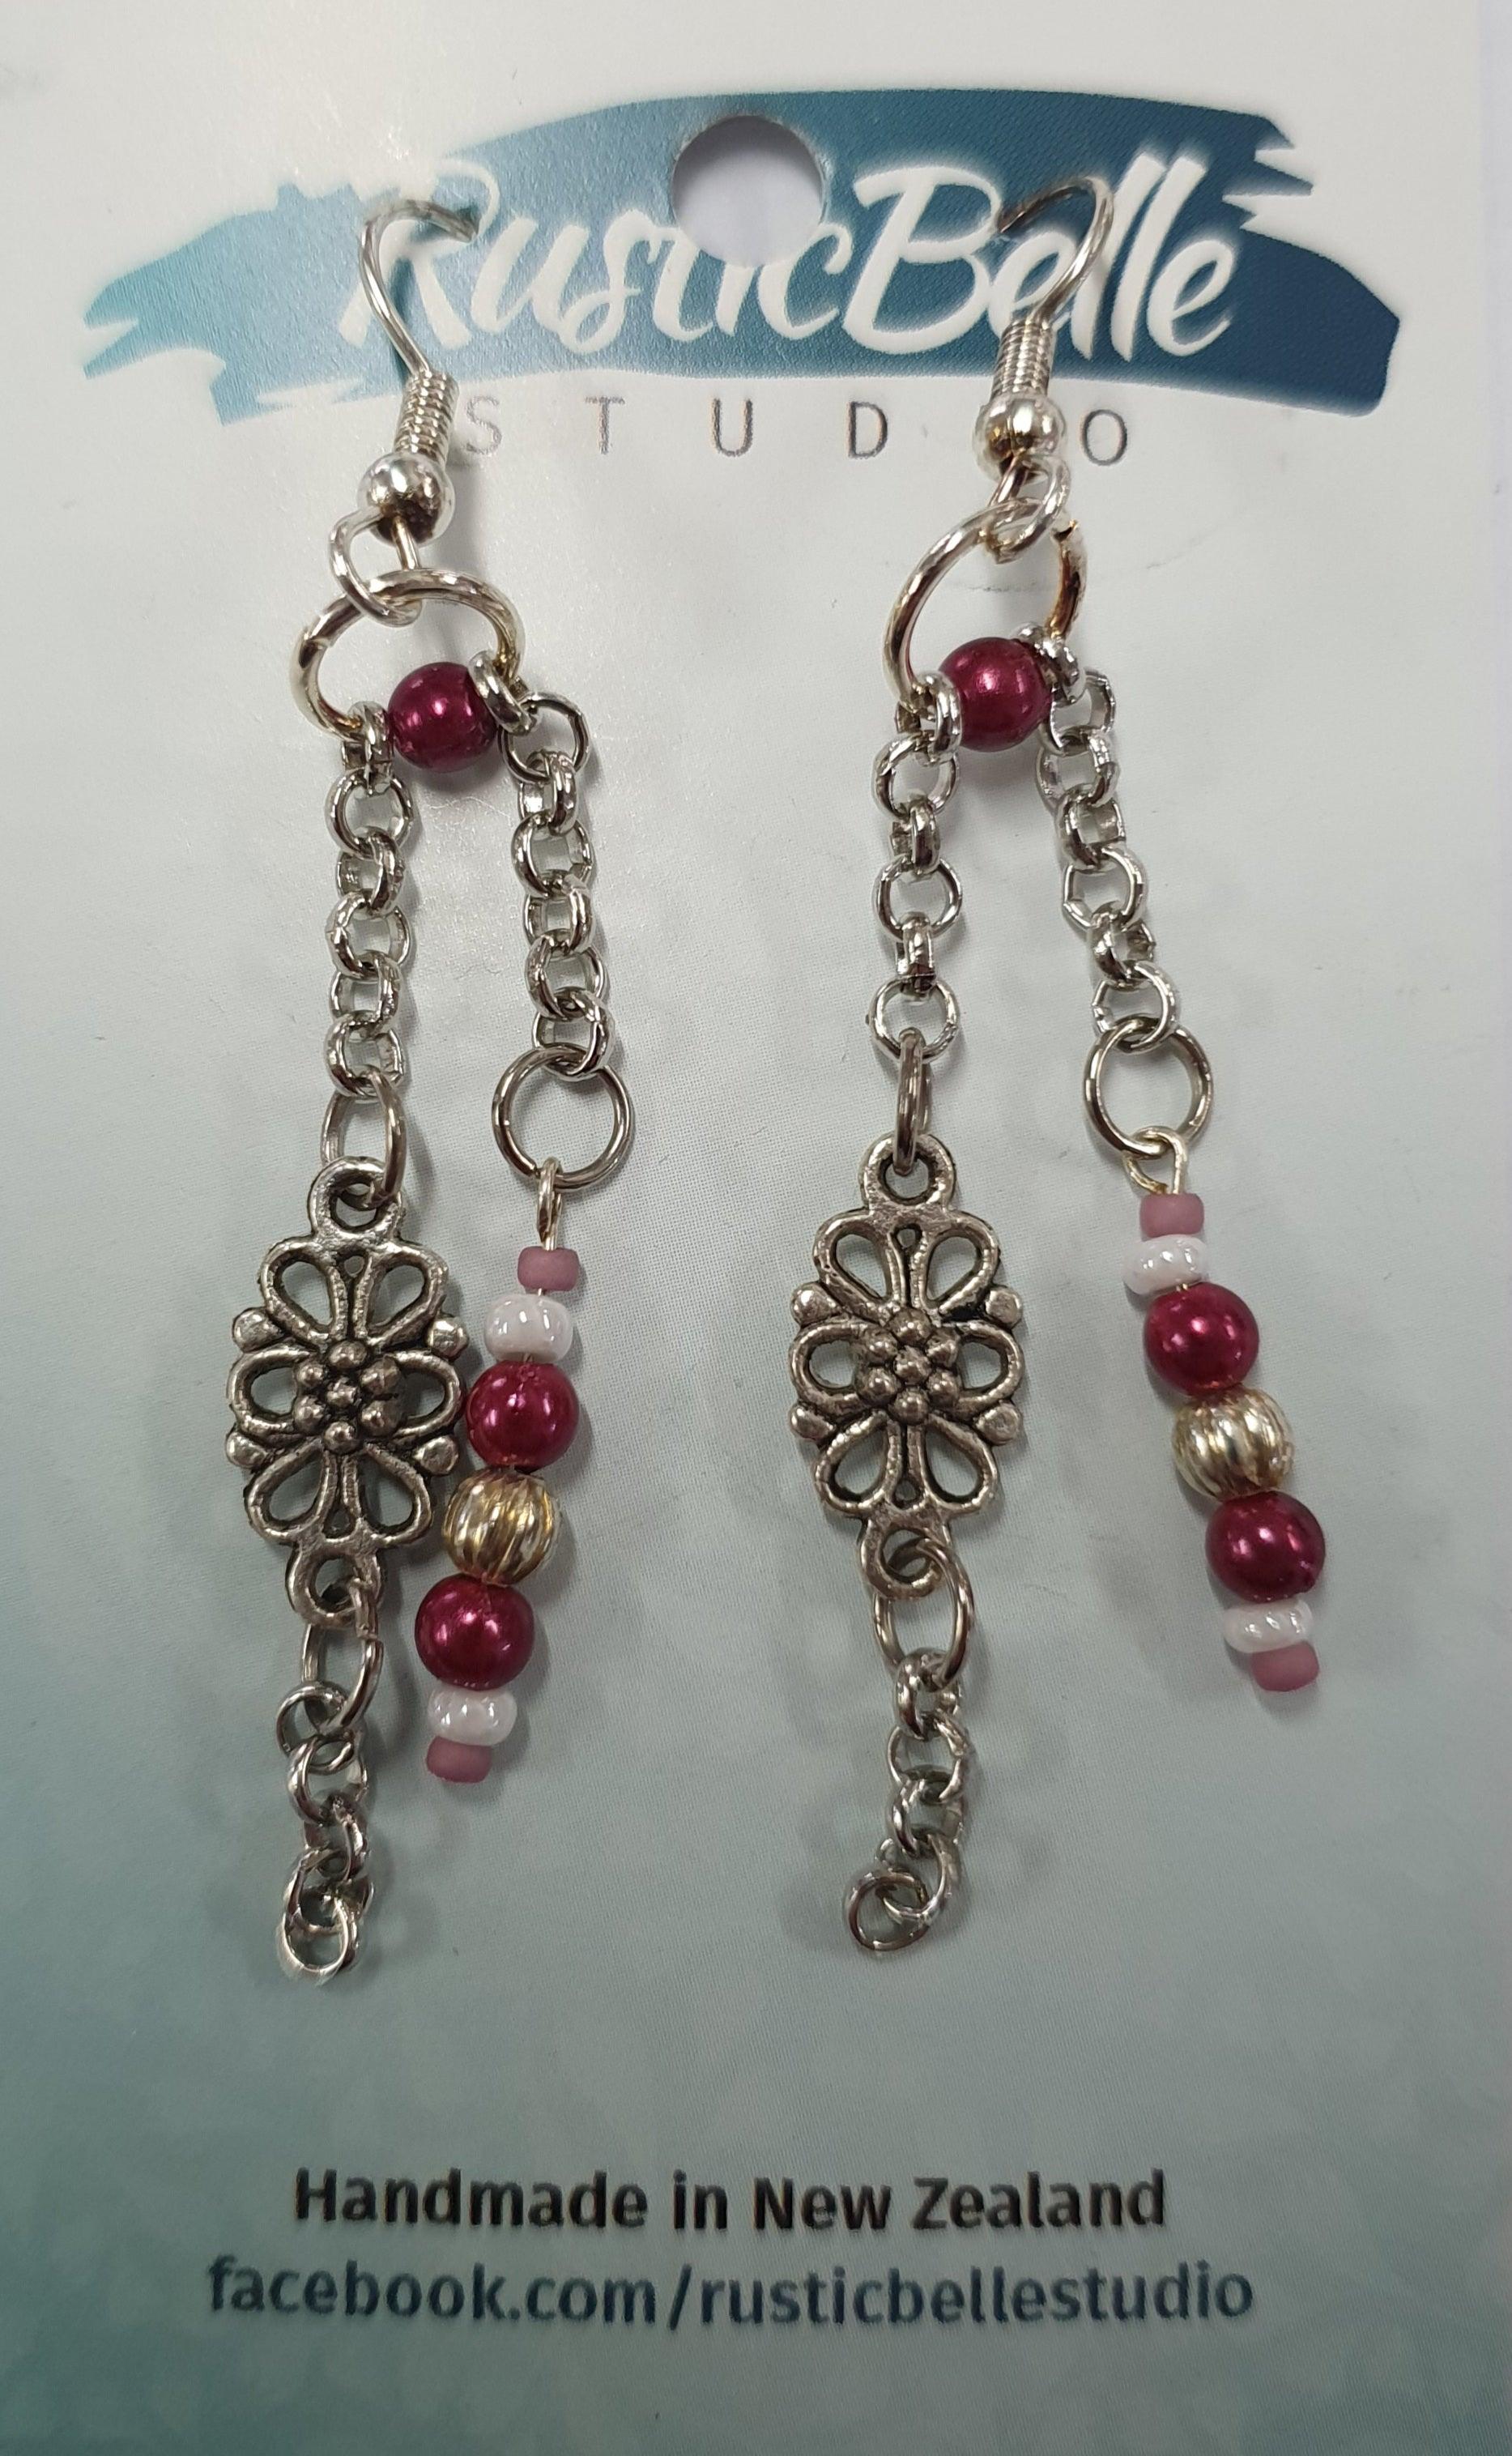 Rusticbelle Earrings - Floral Chain